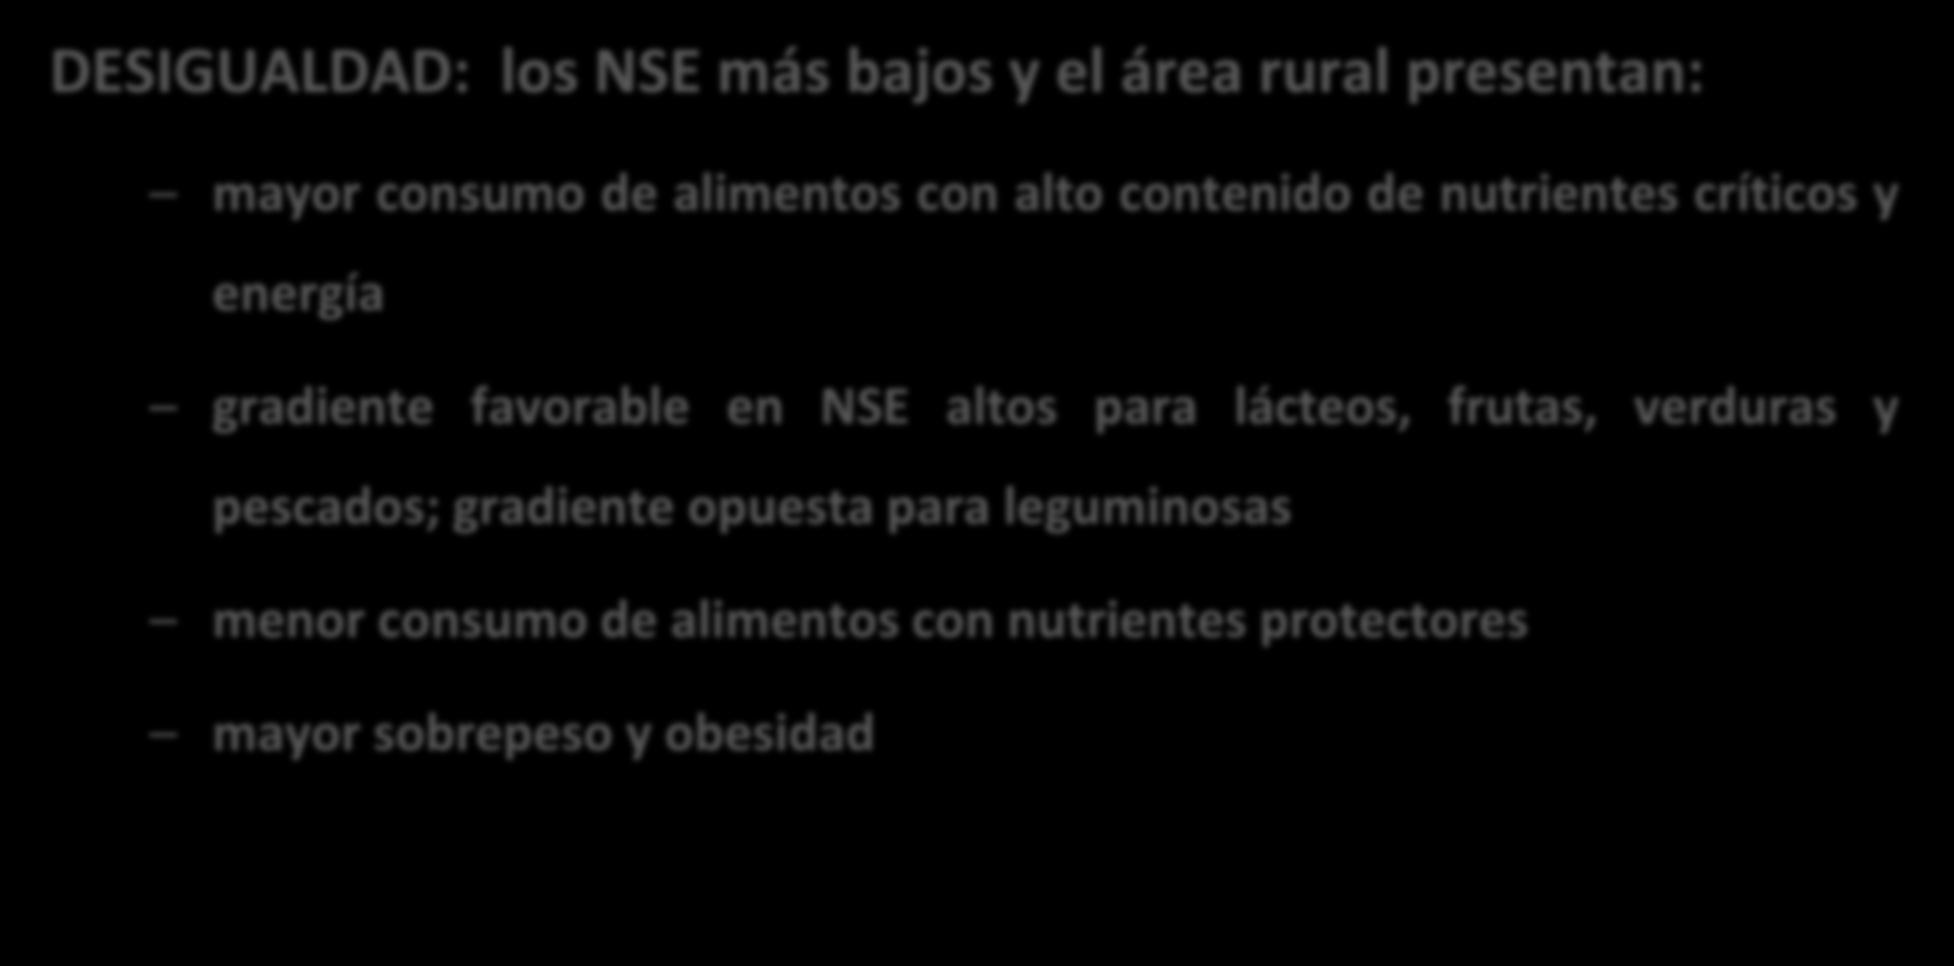 Situación en Chile Calidad: peligros nutricionales DESIGUALDAD: los NSE más bajos y el área rural presentan: mayor consumo de alimentos con alto contenido de nutrientes críticos y energía